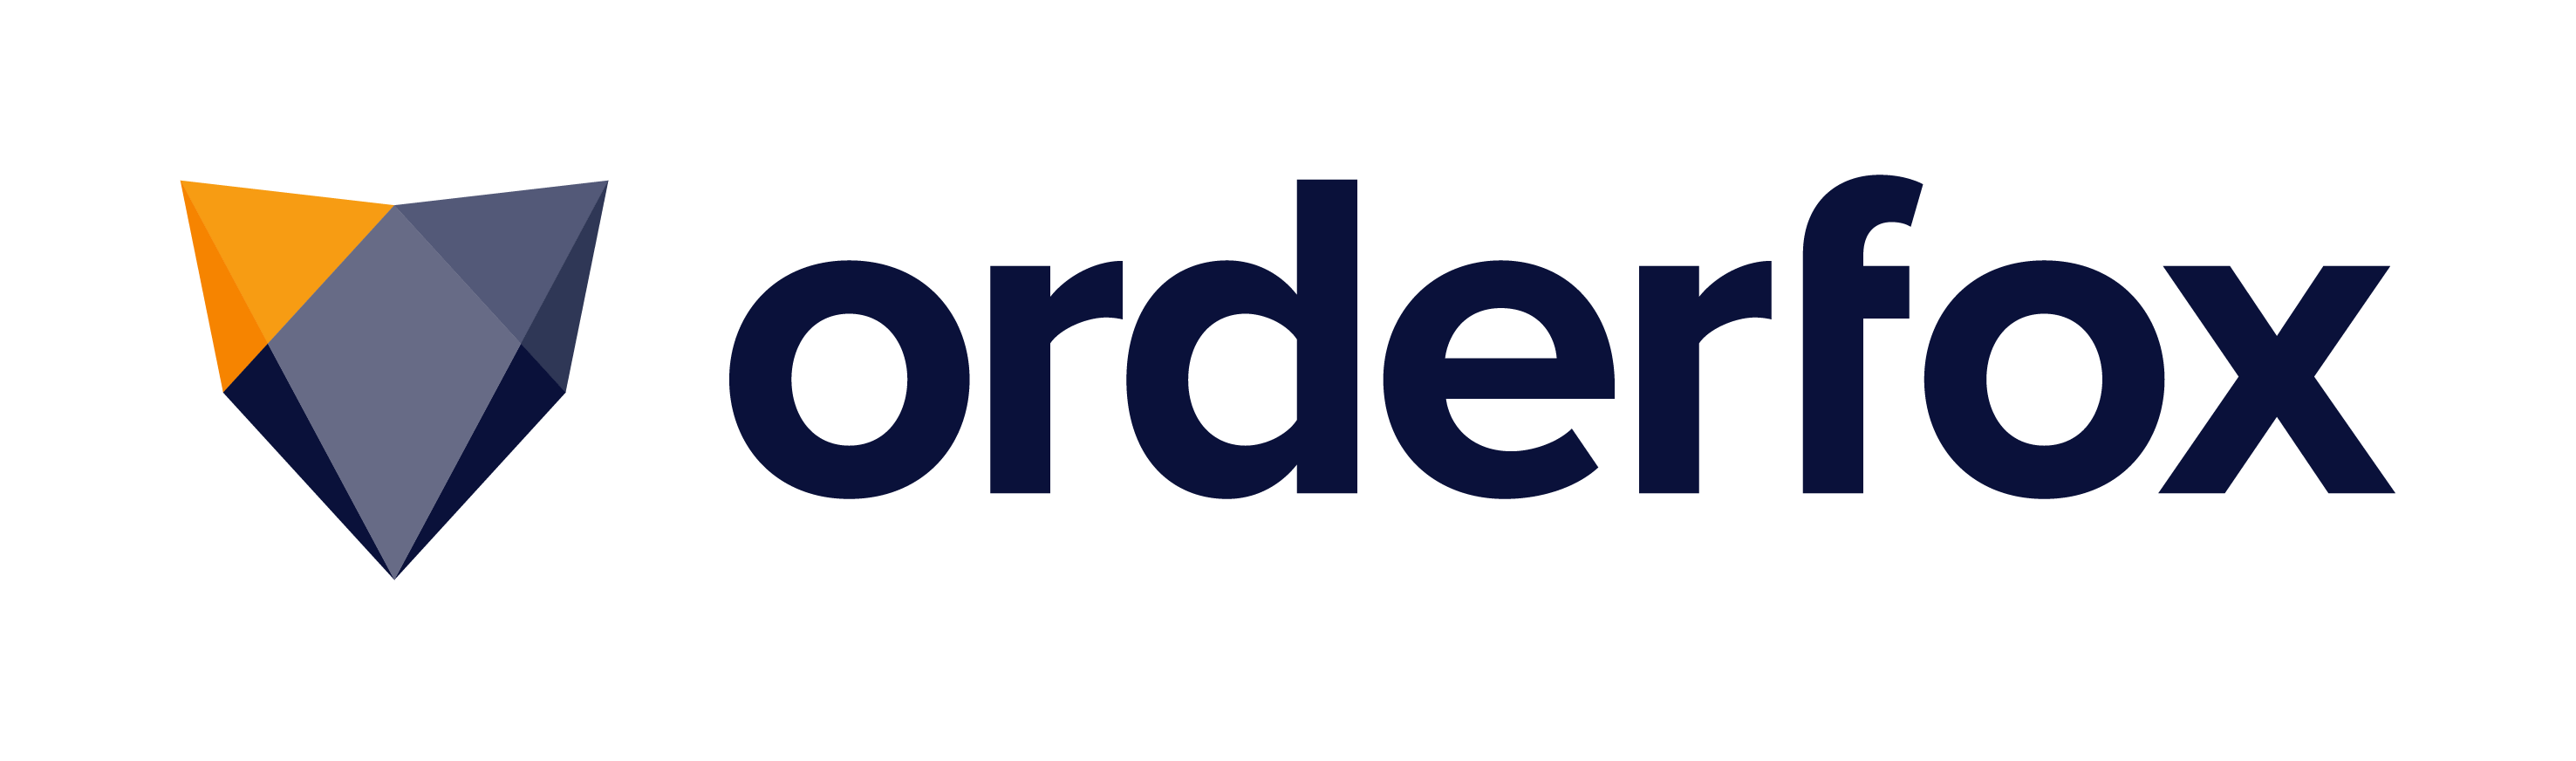 ORDERFOX-logo-coul-RVB1